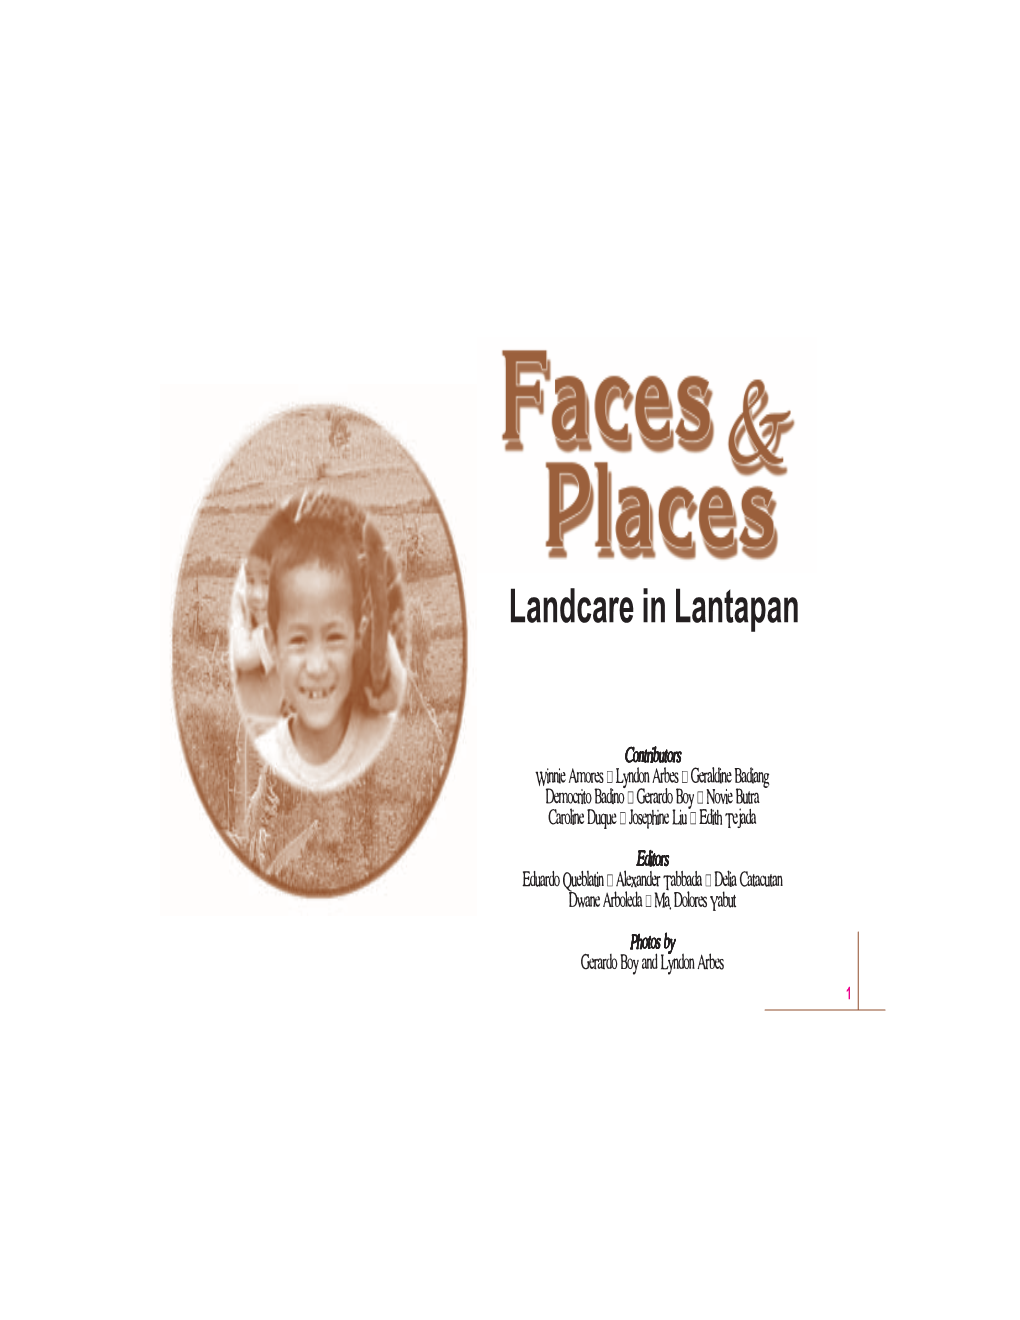 Landcare in Lantapan